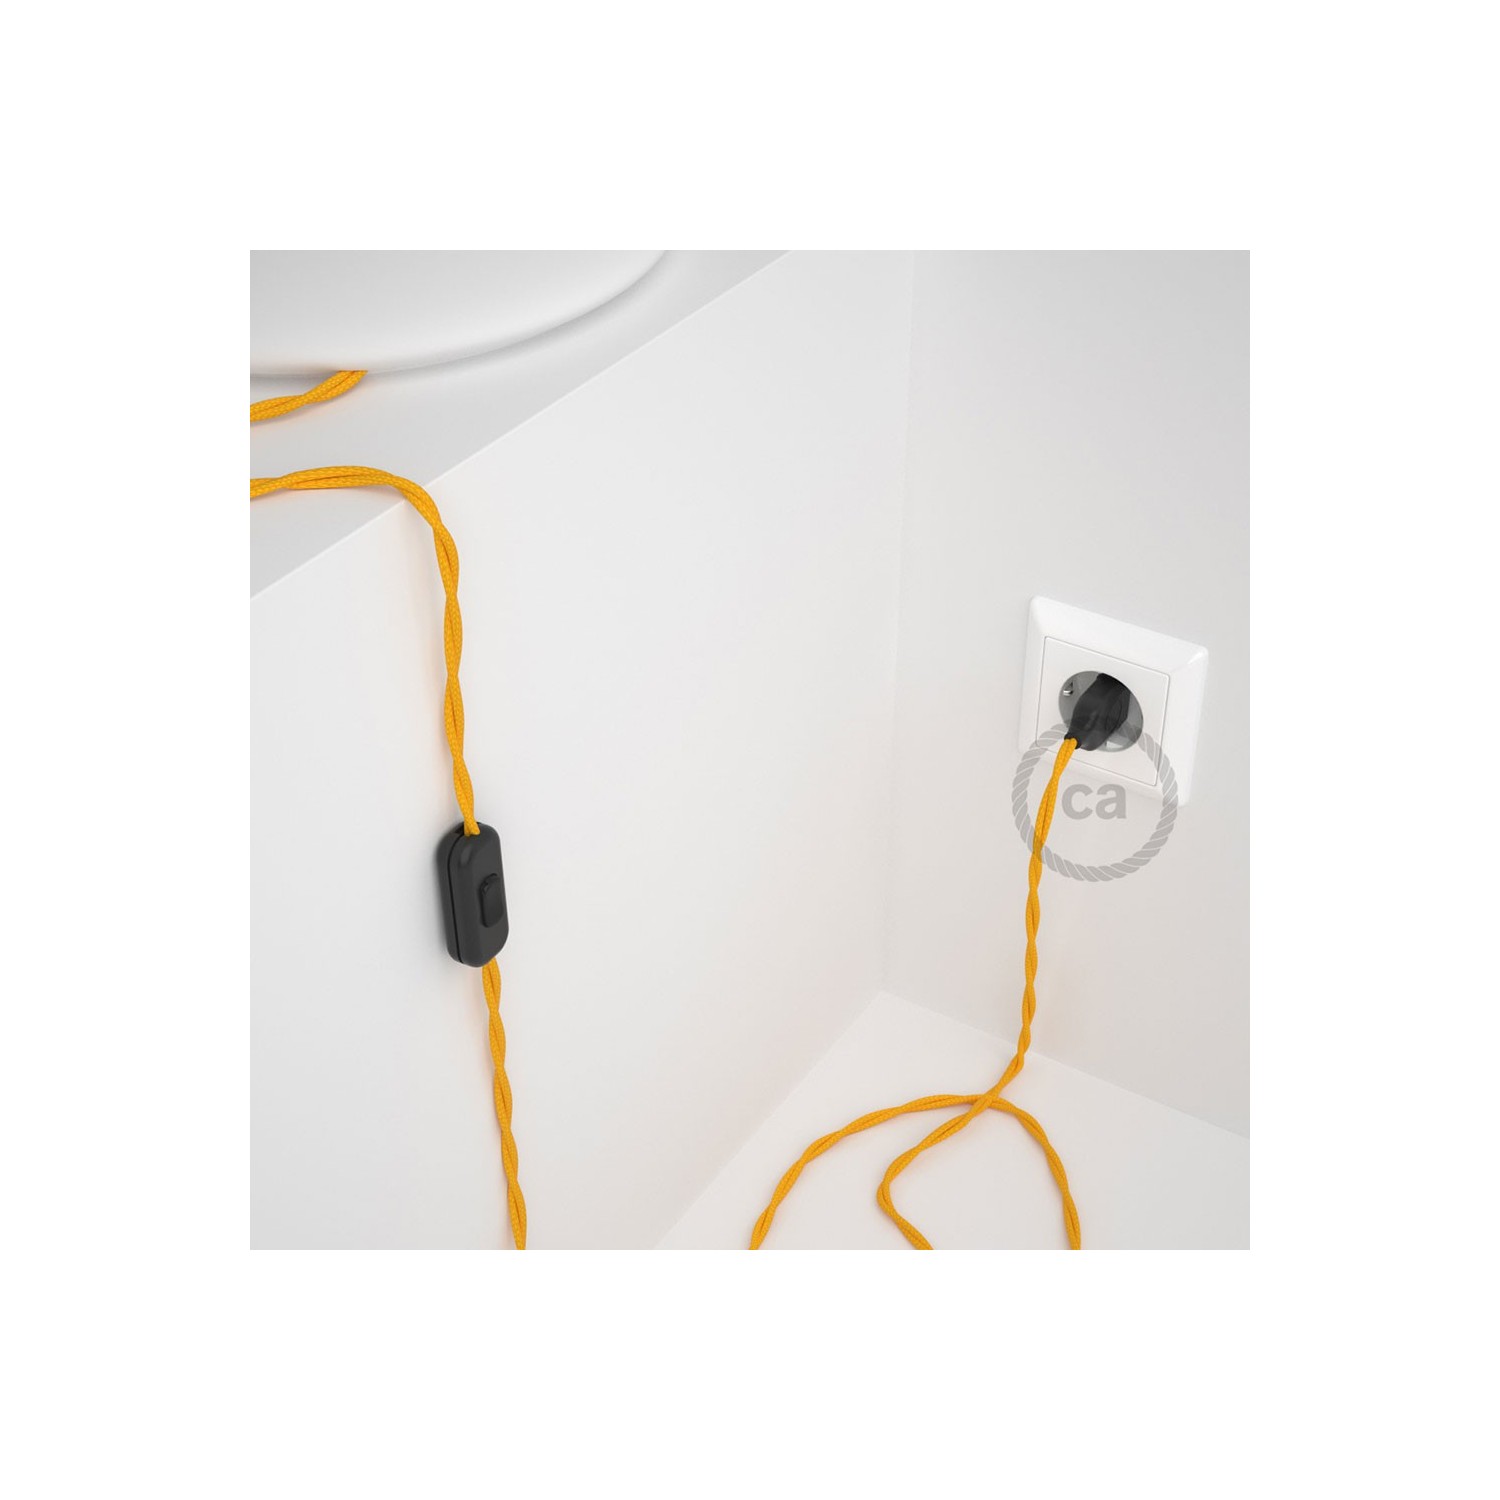 Cordon pour lampe, câble TM10 Effet Soie Jaune 1,80 m. Choisissez la couleur de la fiche et de l'interrupteur!